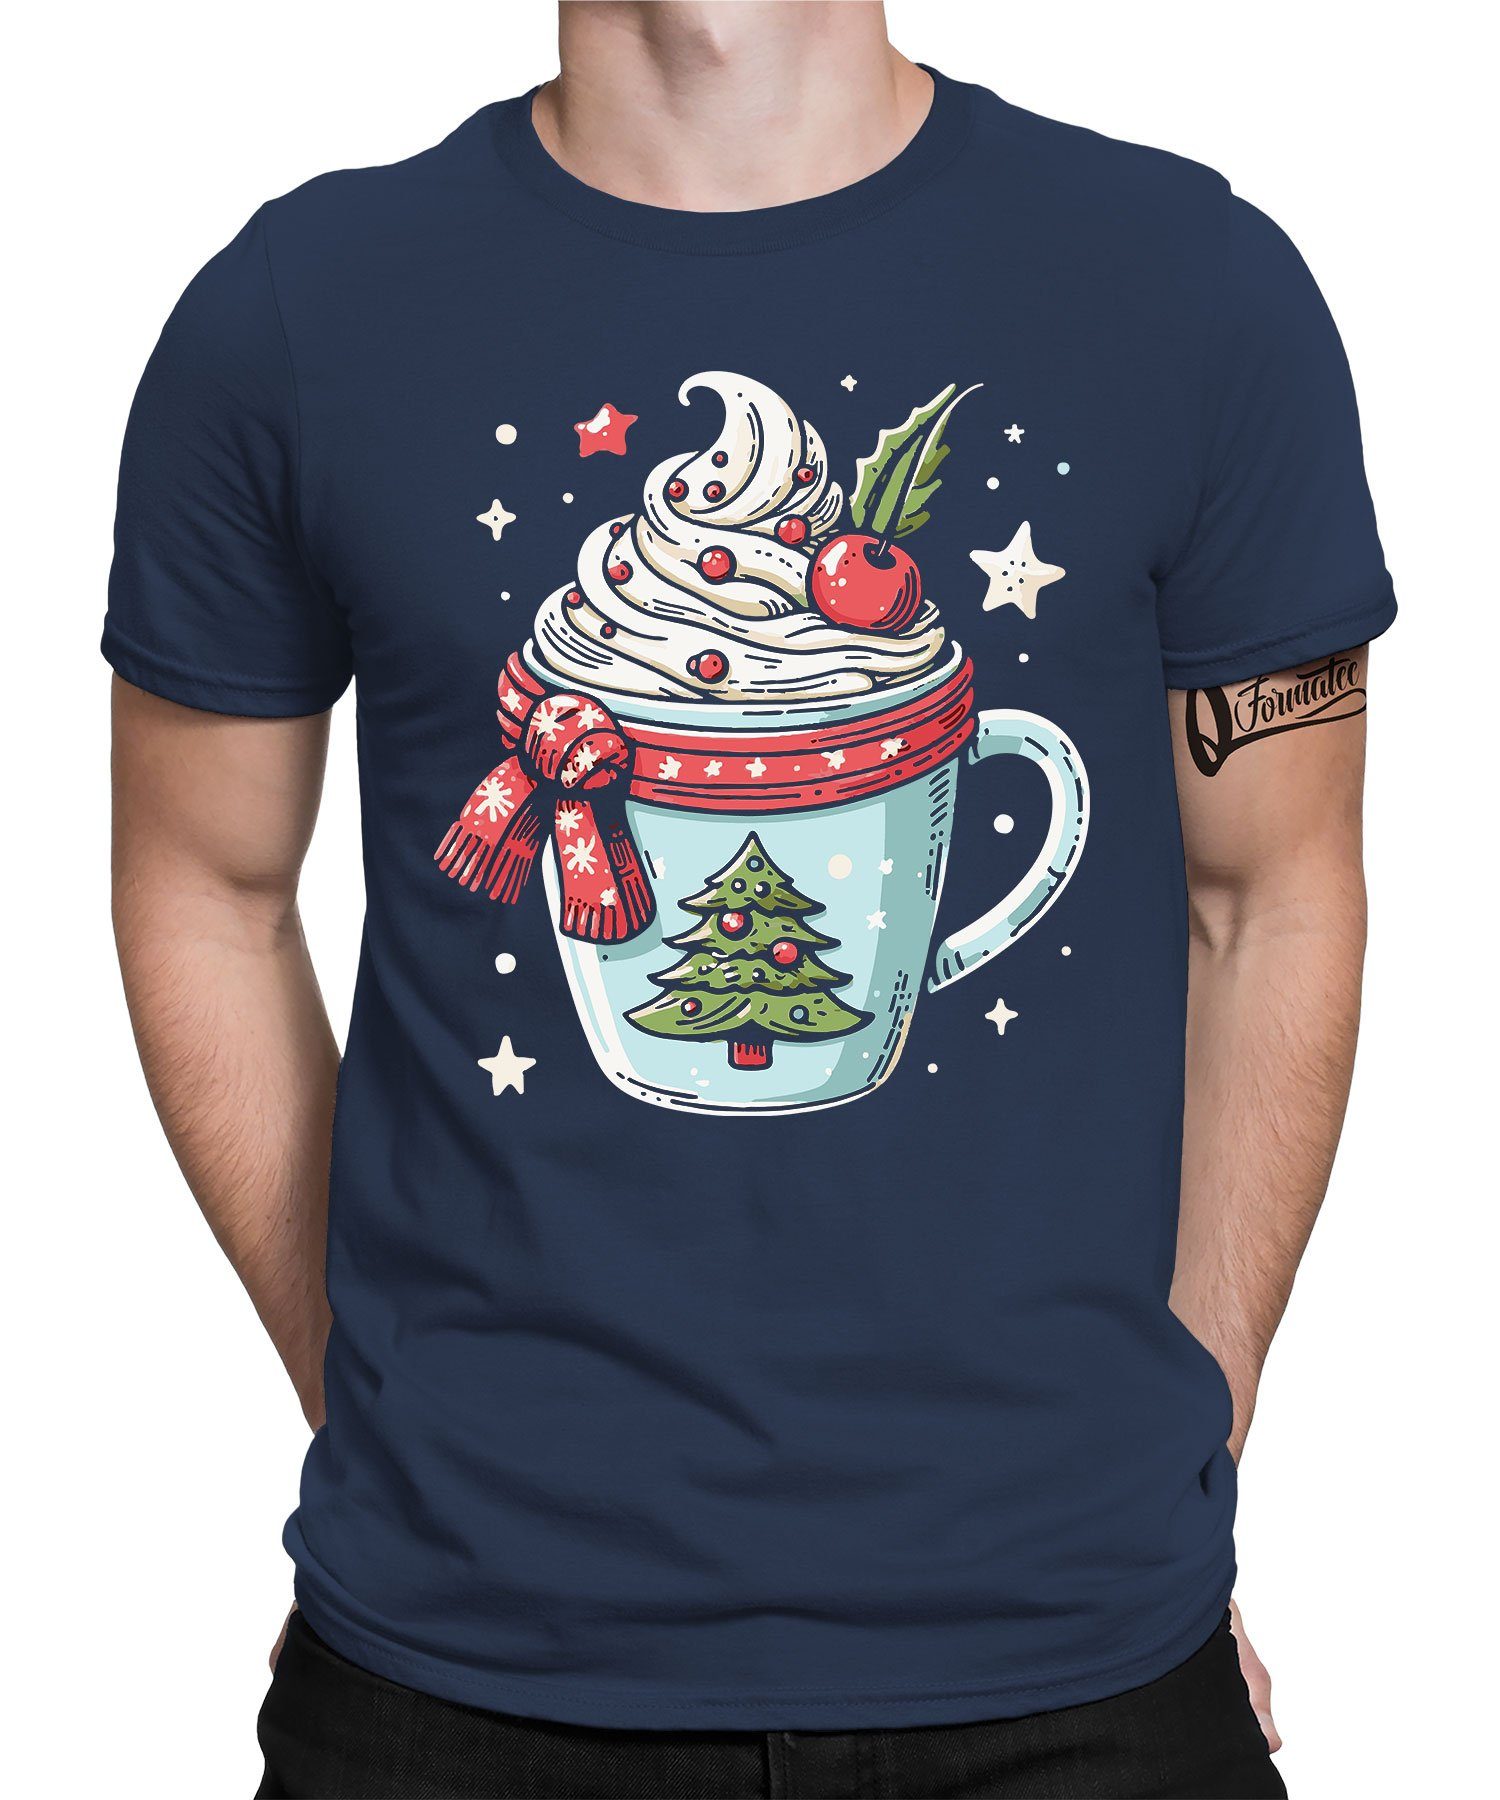 Formatee Blau Herren Schokolade Kurzarmshirt T-Shirt - Navy X-mas Weihnachtsgeschenk Quattro Heiße Weihnachten (1-tlg)